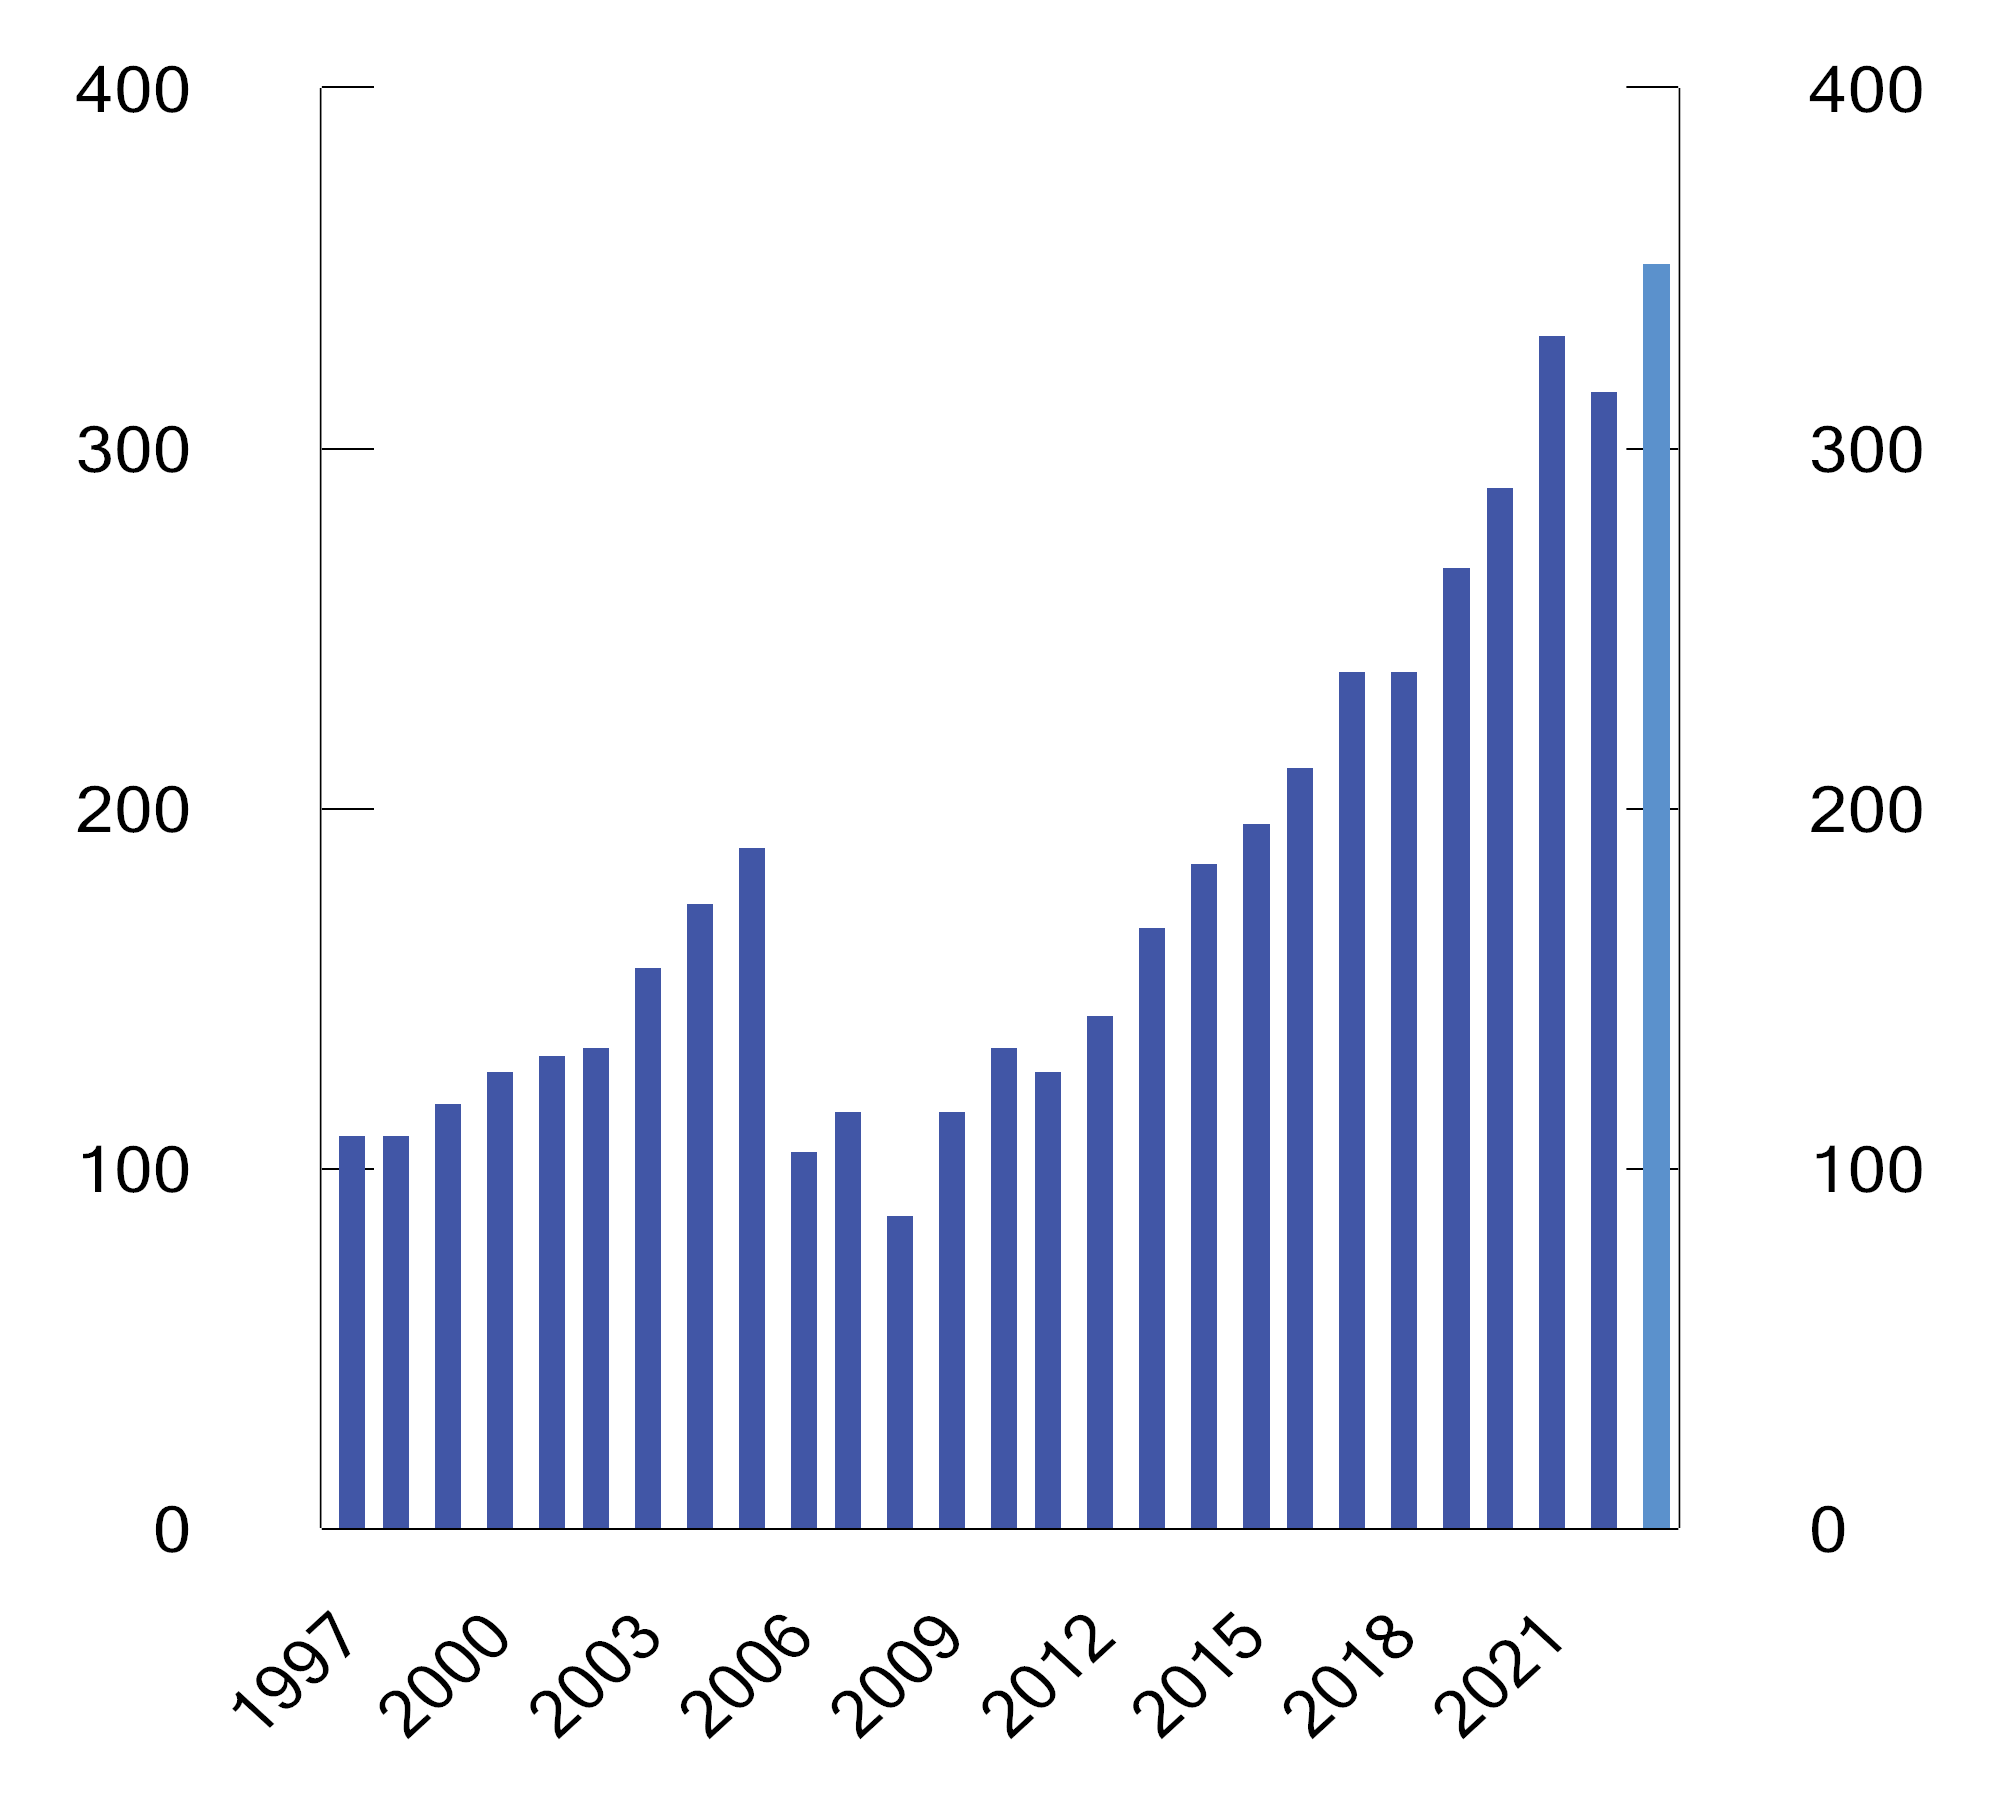 Figur 4.2 Markedsverdien av SPN siden 1998.1 Milliarder kroner